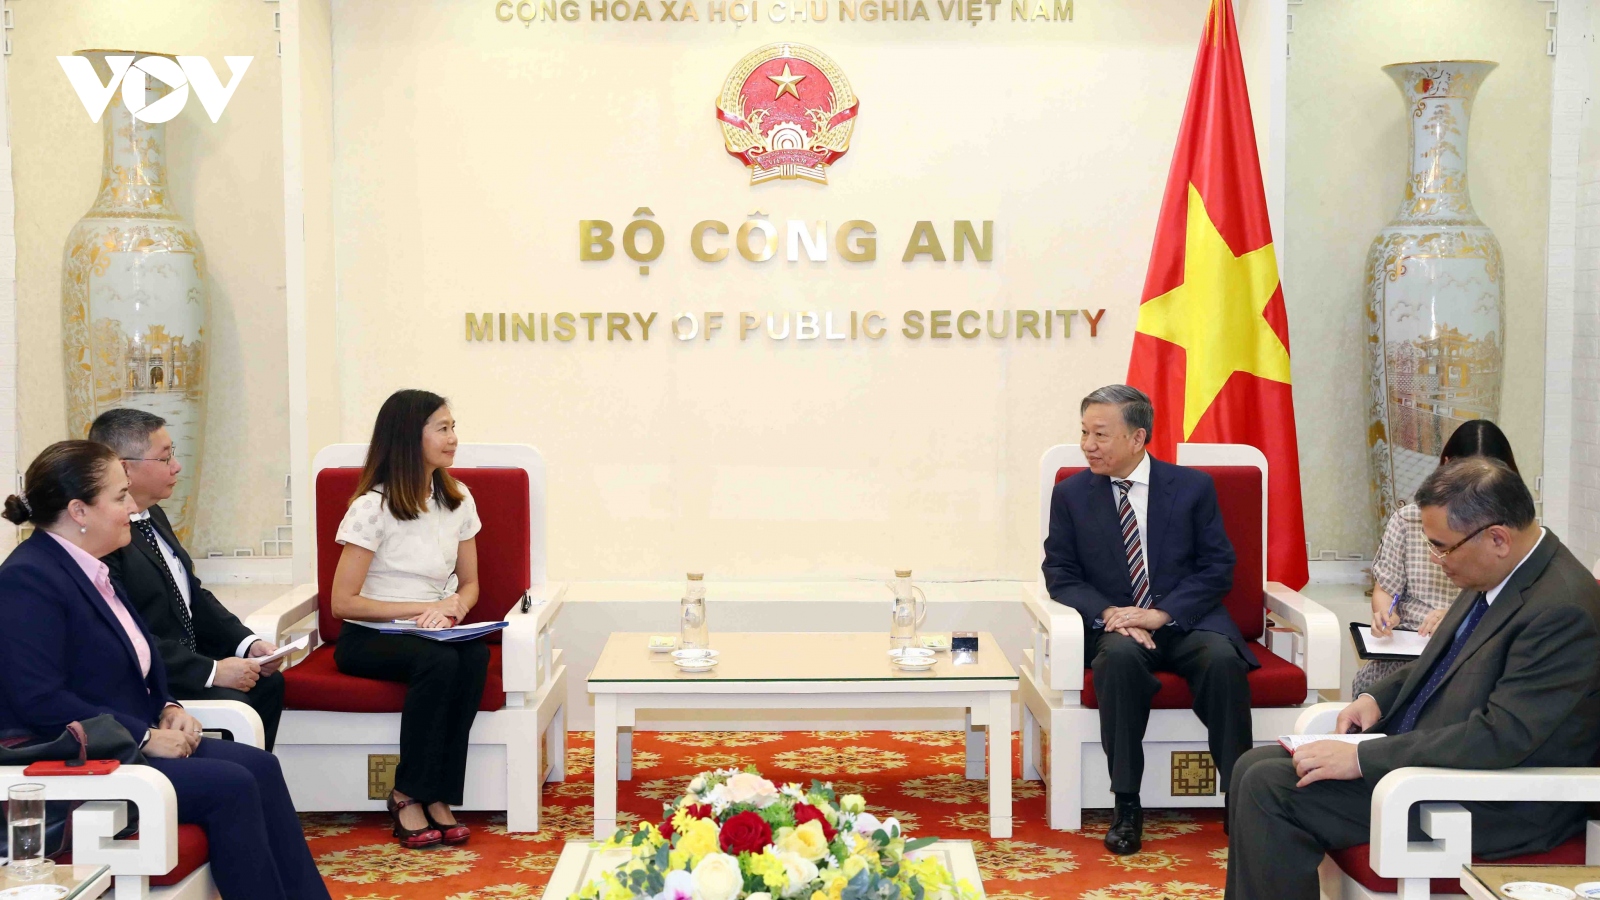 Bộ trưởng Tô Lâm tiếp Điều phối viên thường trú LHQ tại Việt Nam